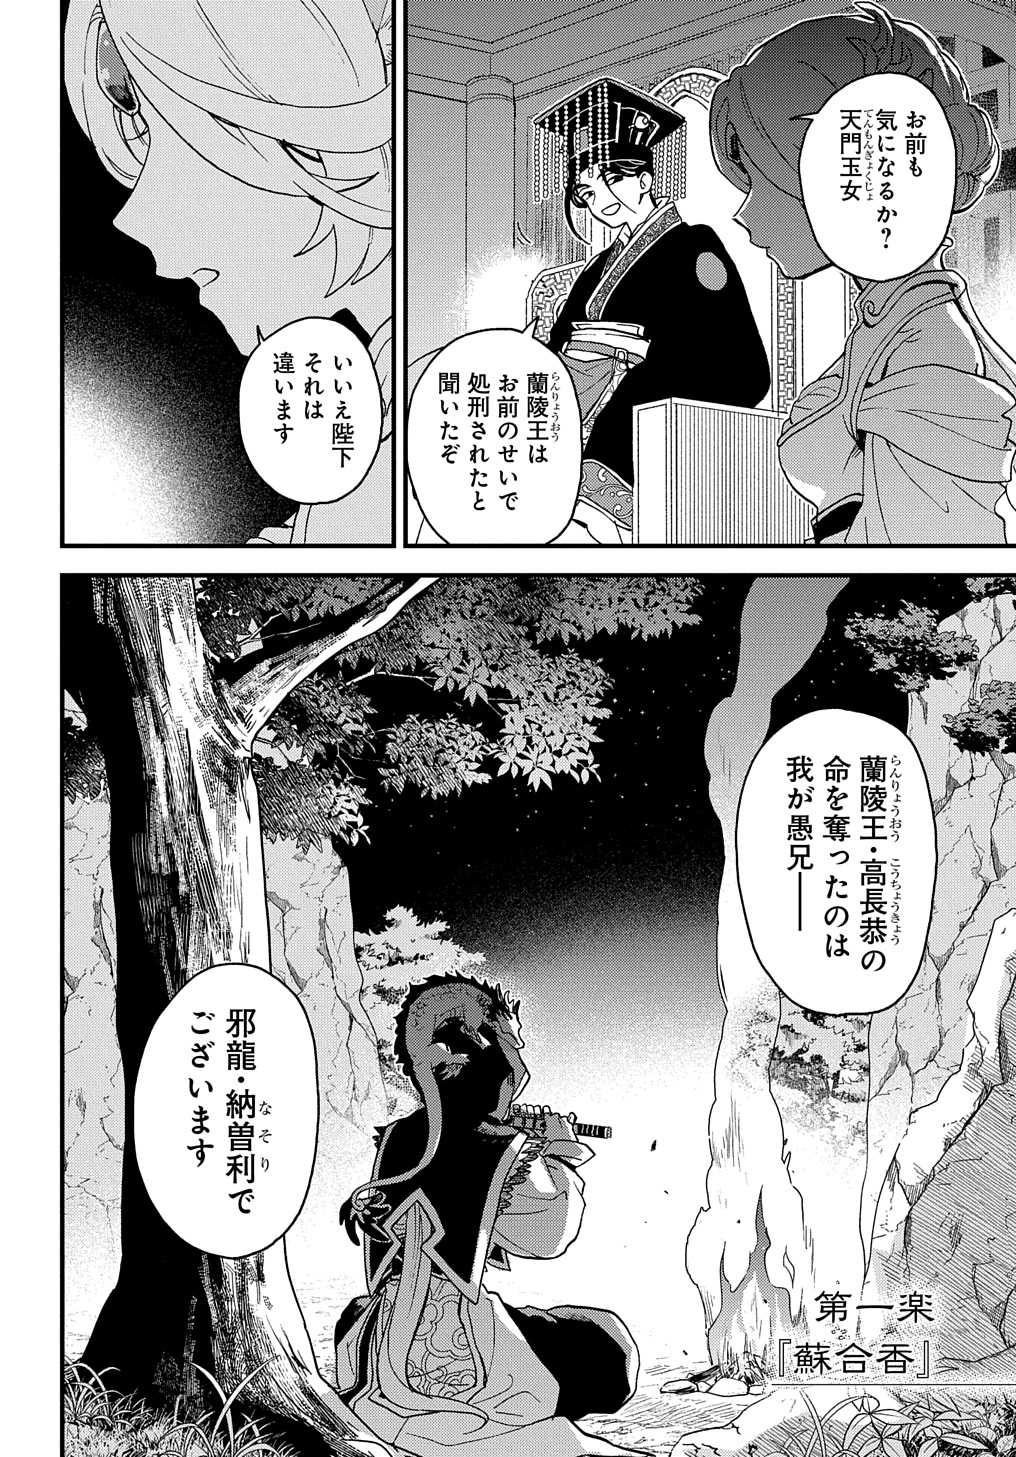 Misasagi no Ou - Chapter 1 - Page 58